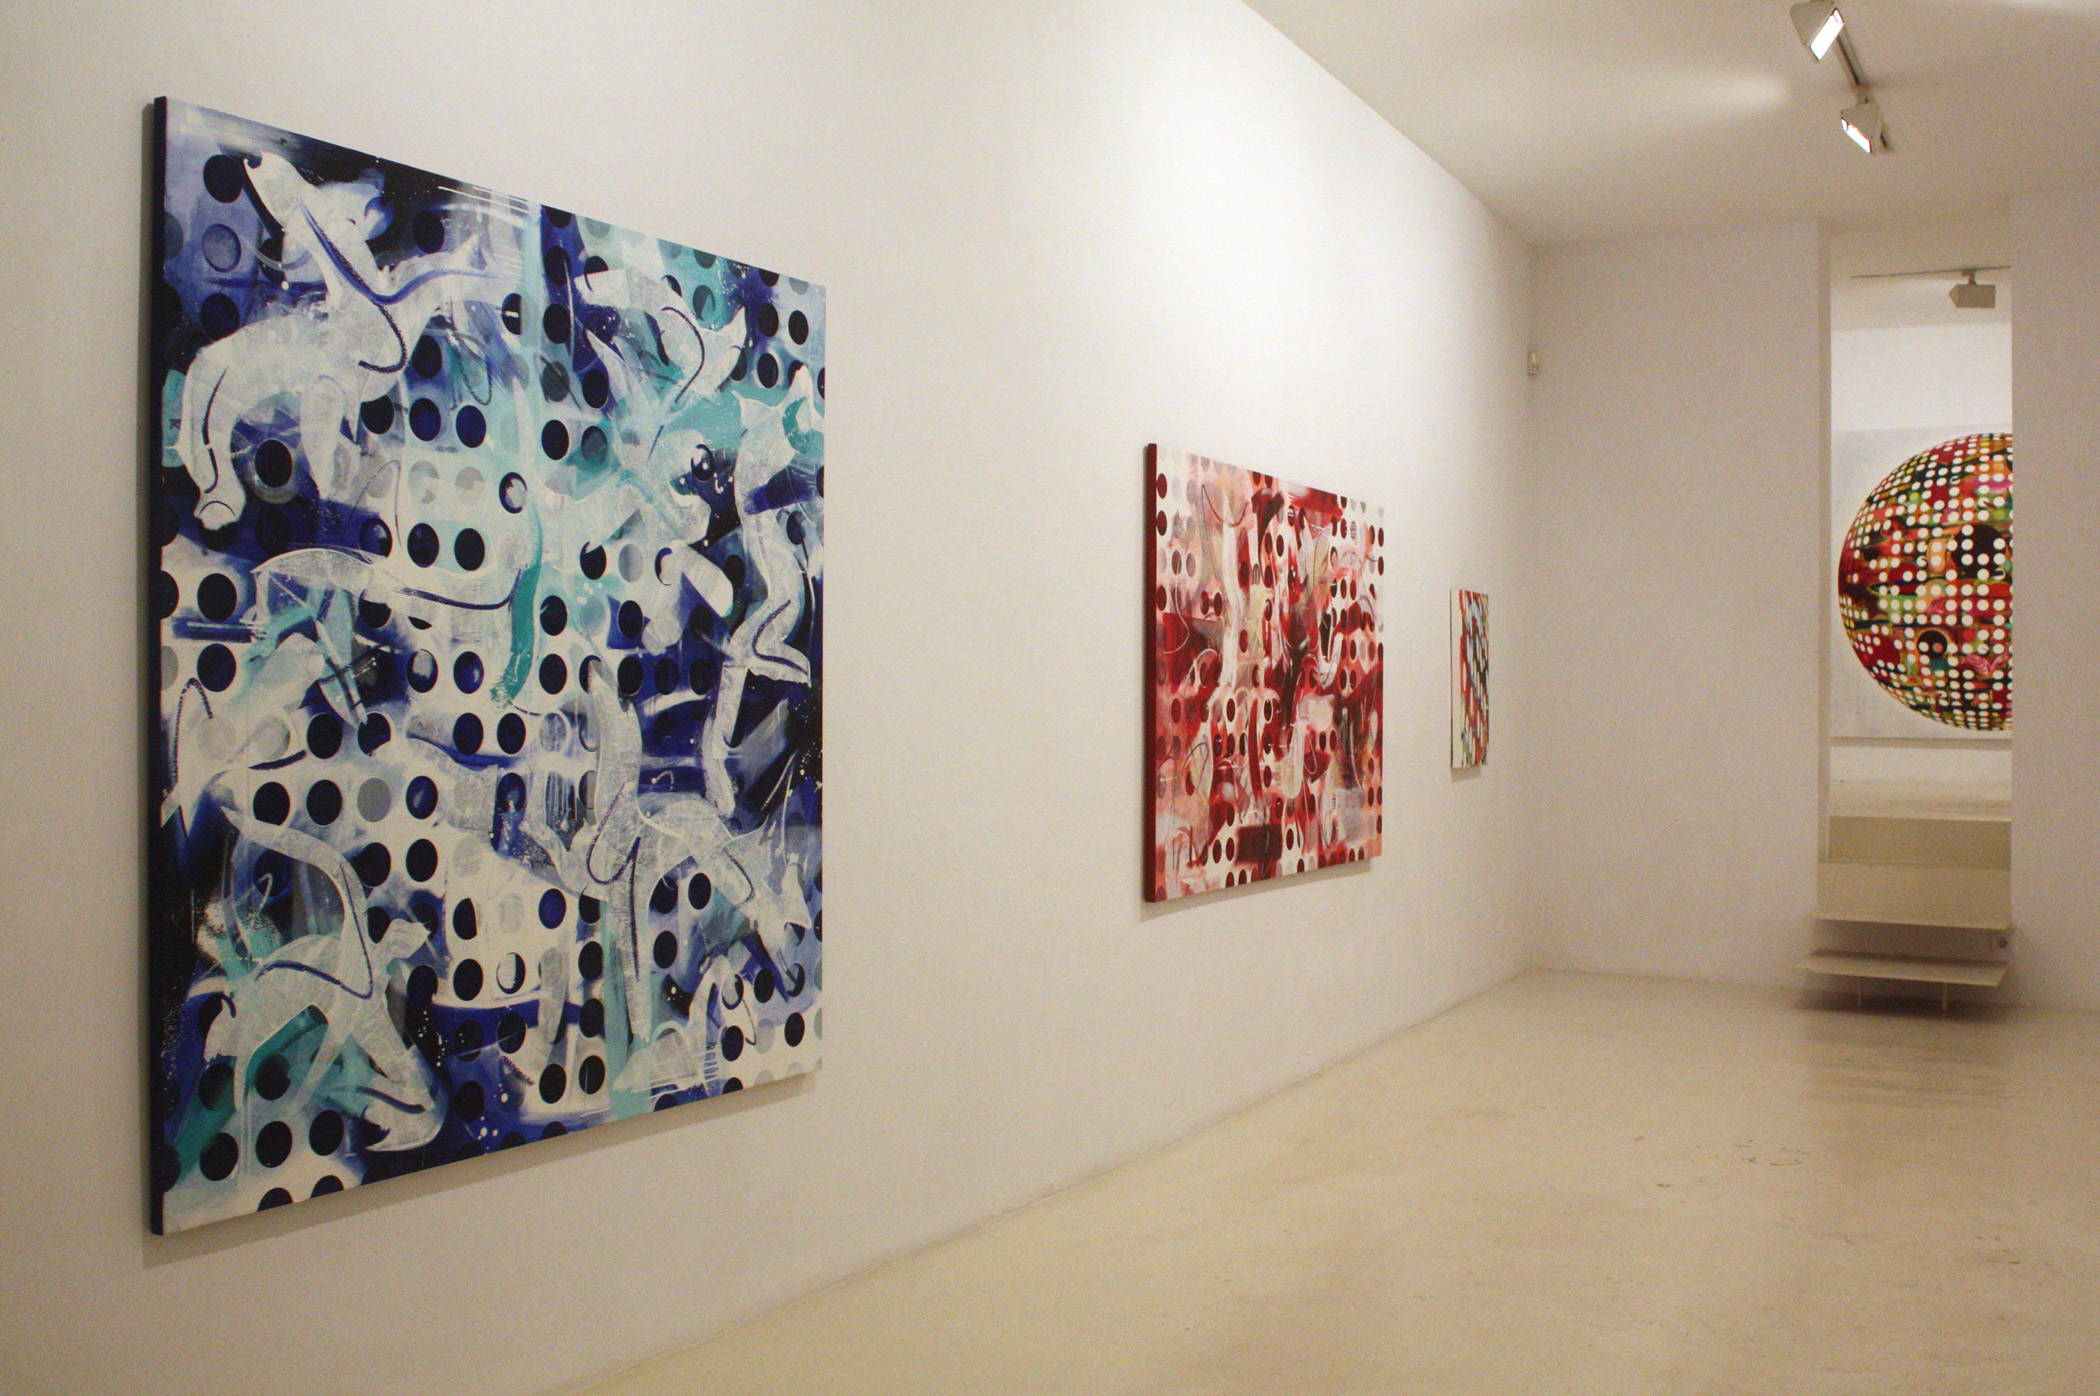 Exhibition view Espacios y Loops from Adrian Navarro in Palma, 2014